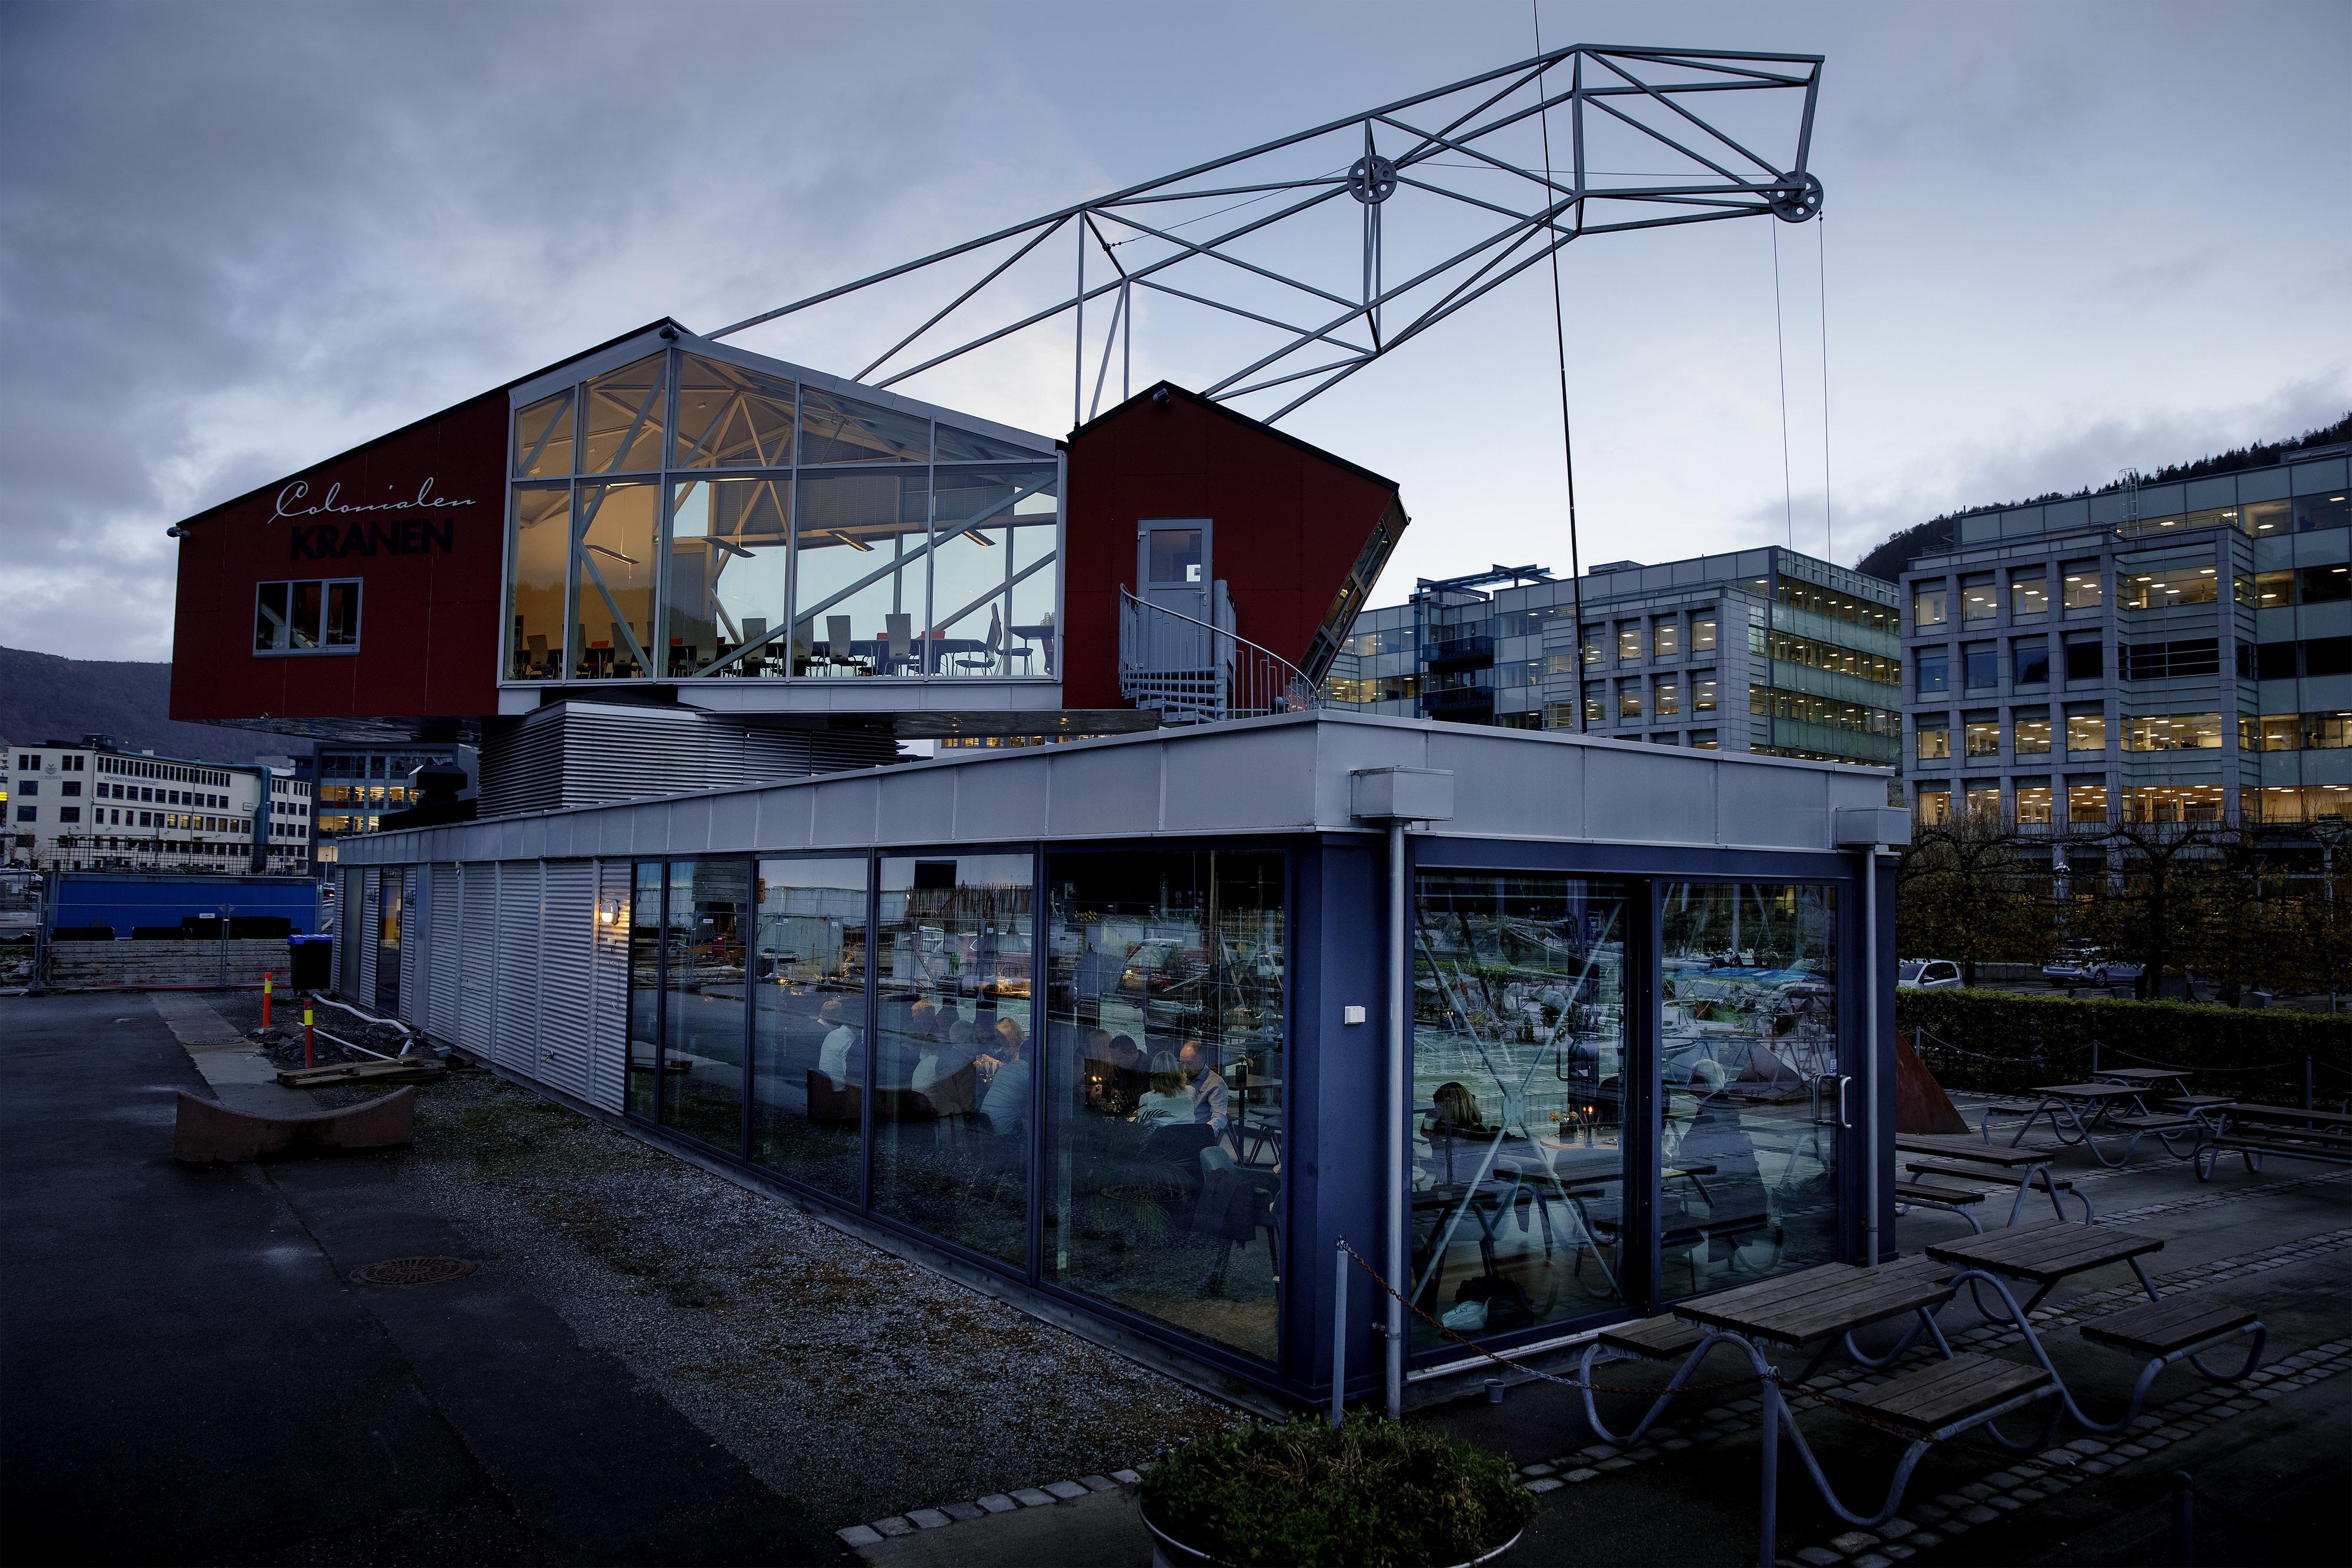 KRANEN: Grillmat på Colonialen Kranen i Bergen, anbefales av tidligere restaurantanmelder Amanda Bahl.